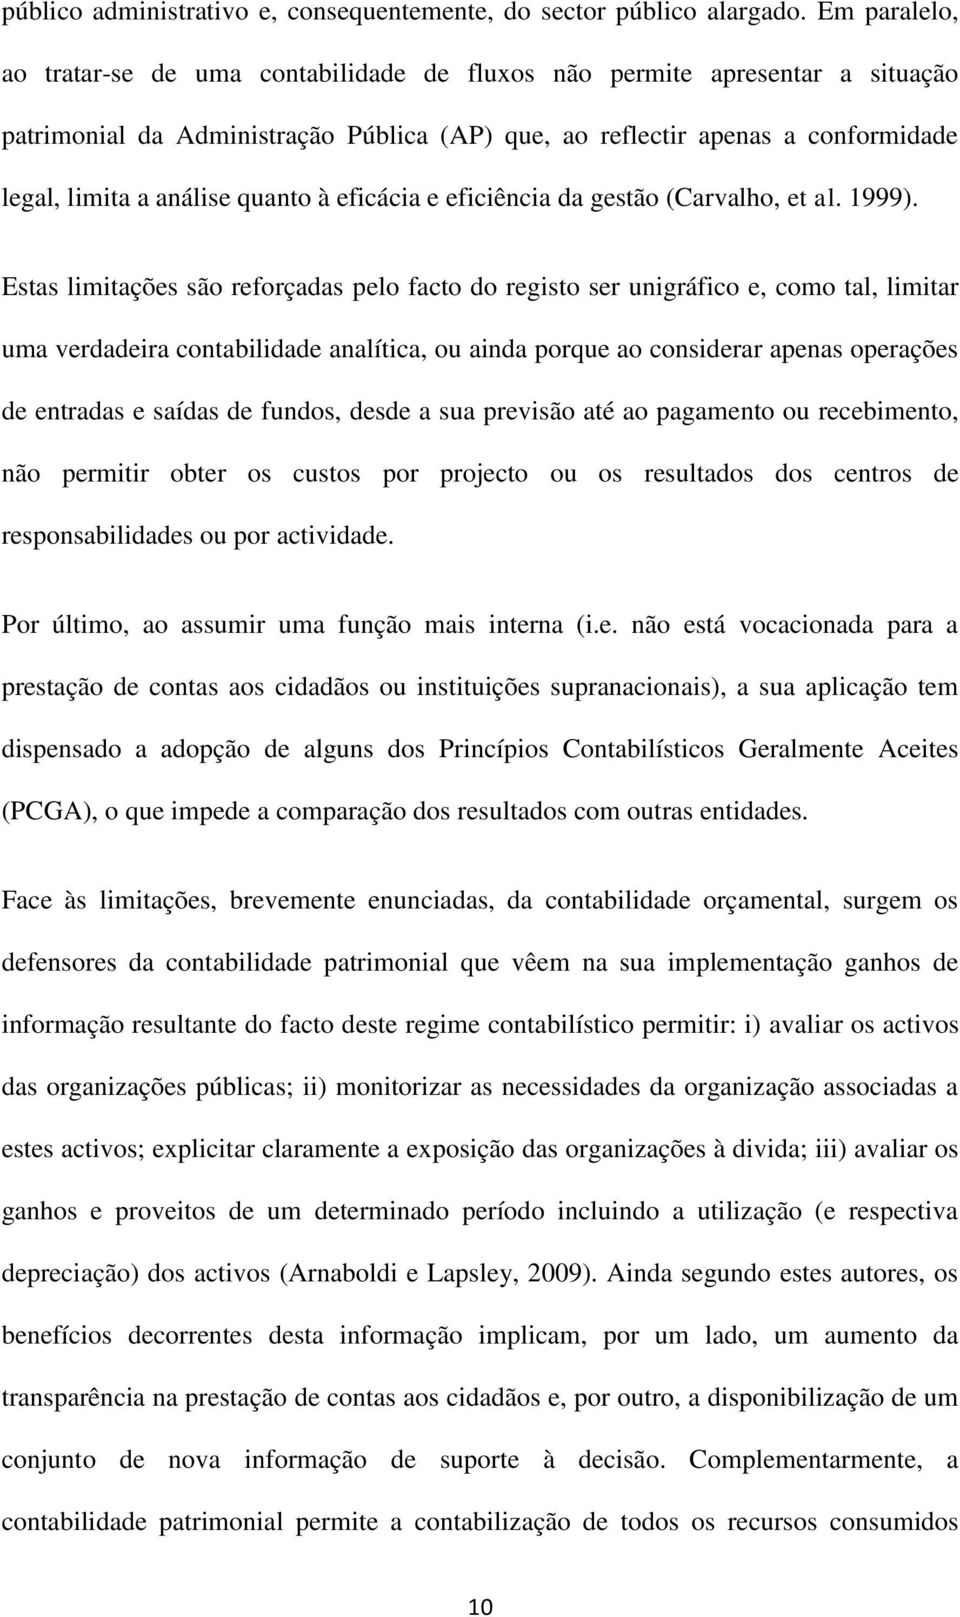 quanto à eficácia e eficiência da gestão (Carvalho, et al. 1999).